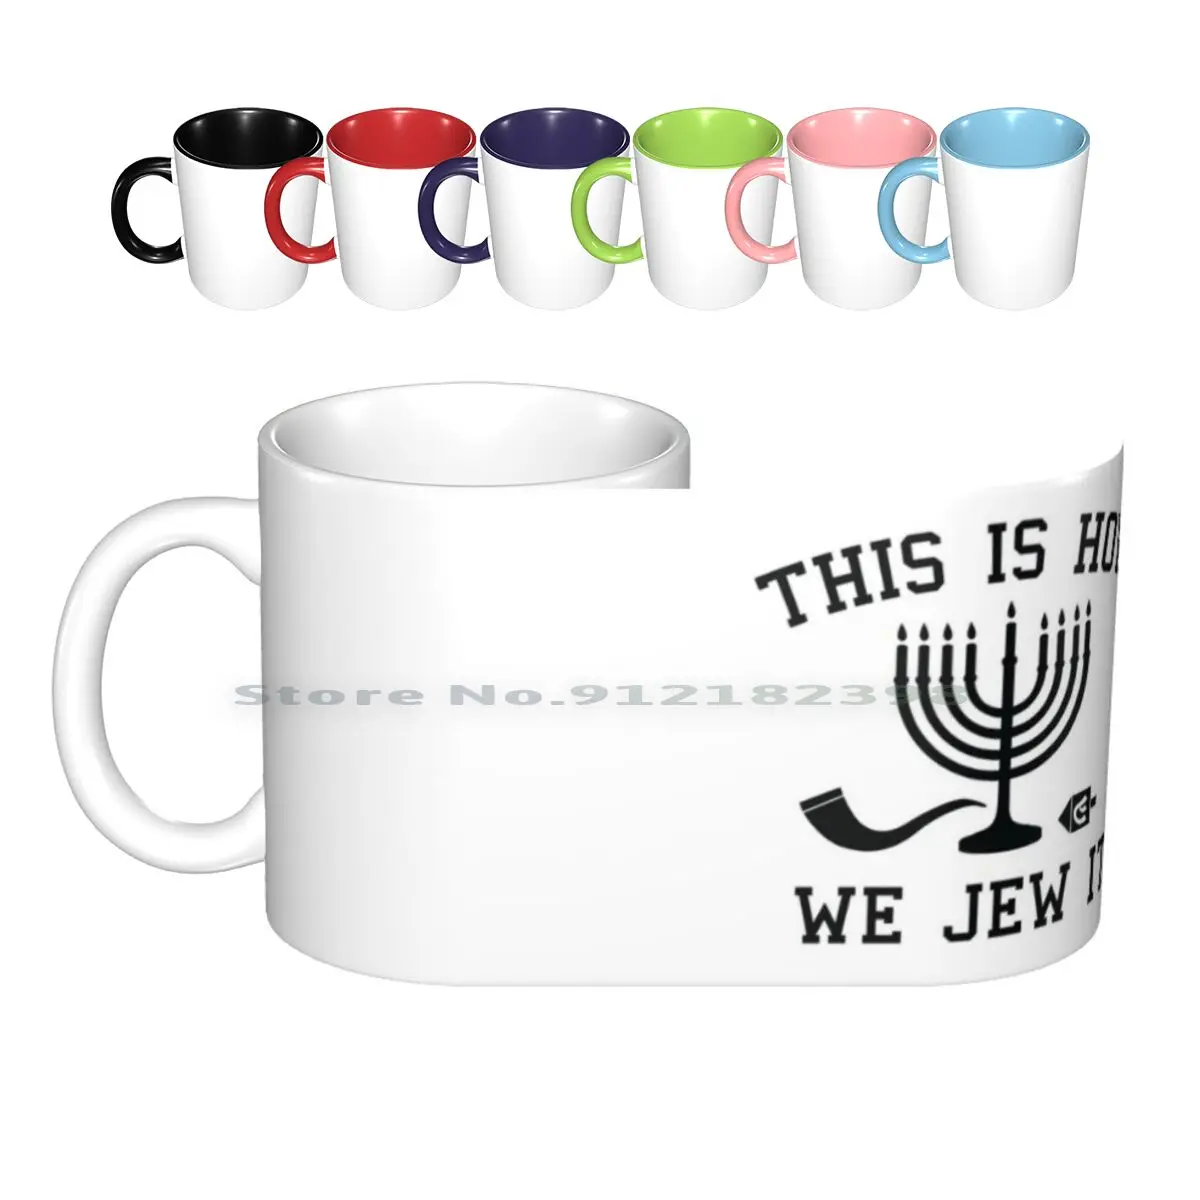 

Керамические кружки «Как мы это евреем», кофейные чашки, Кружка для молока и чая, еврейский Менора, в стиле хип-хоп, рэп 90-х, шутка в ретро-стил...